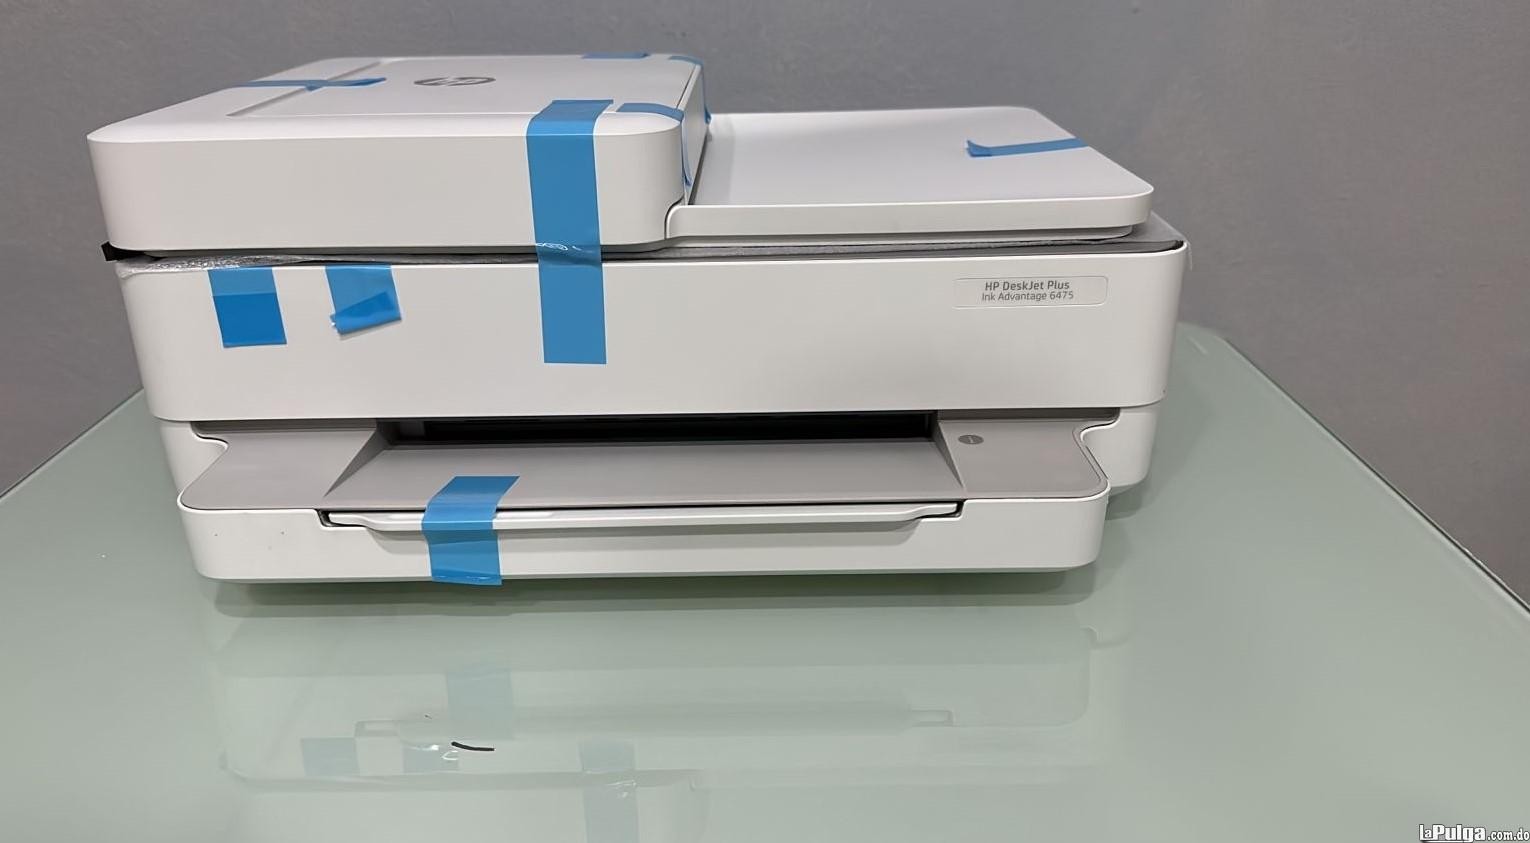 impresoras y scanners - Impresora Multifuncional HP DESKJET 6475 - Funcion por wifi y cable USB 2